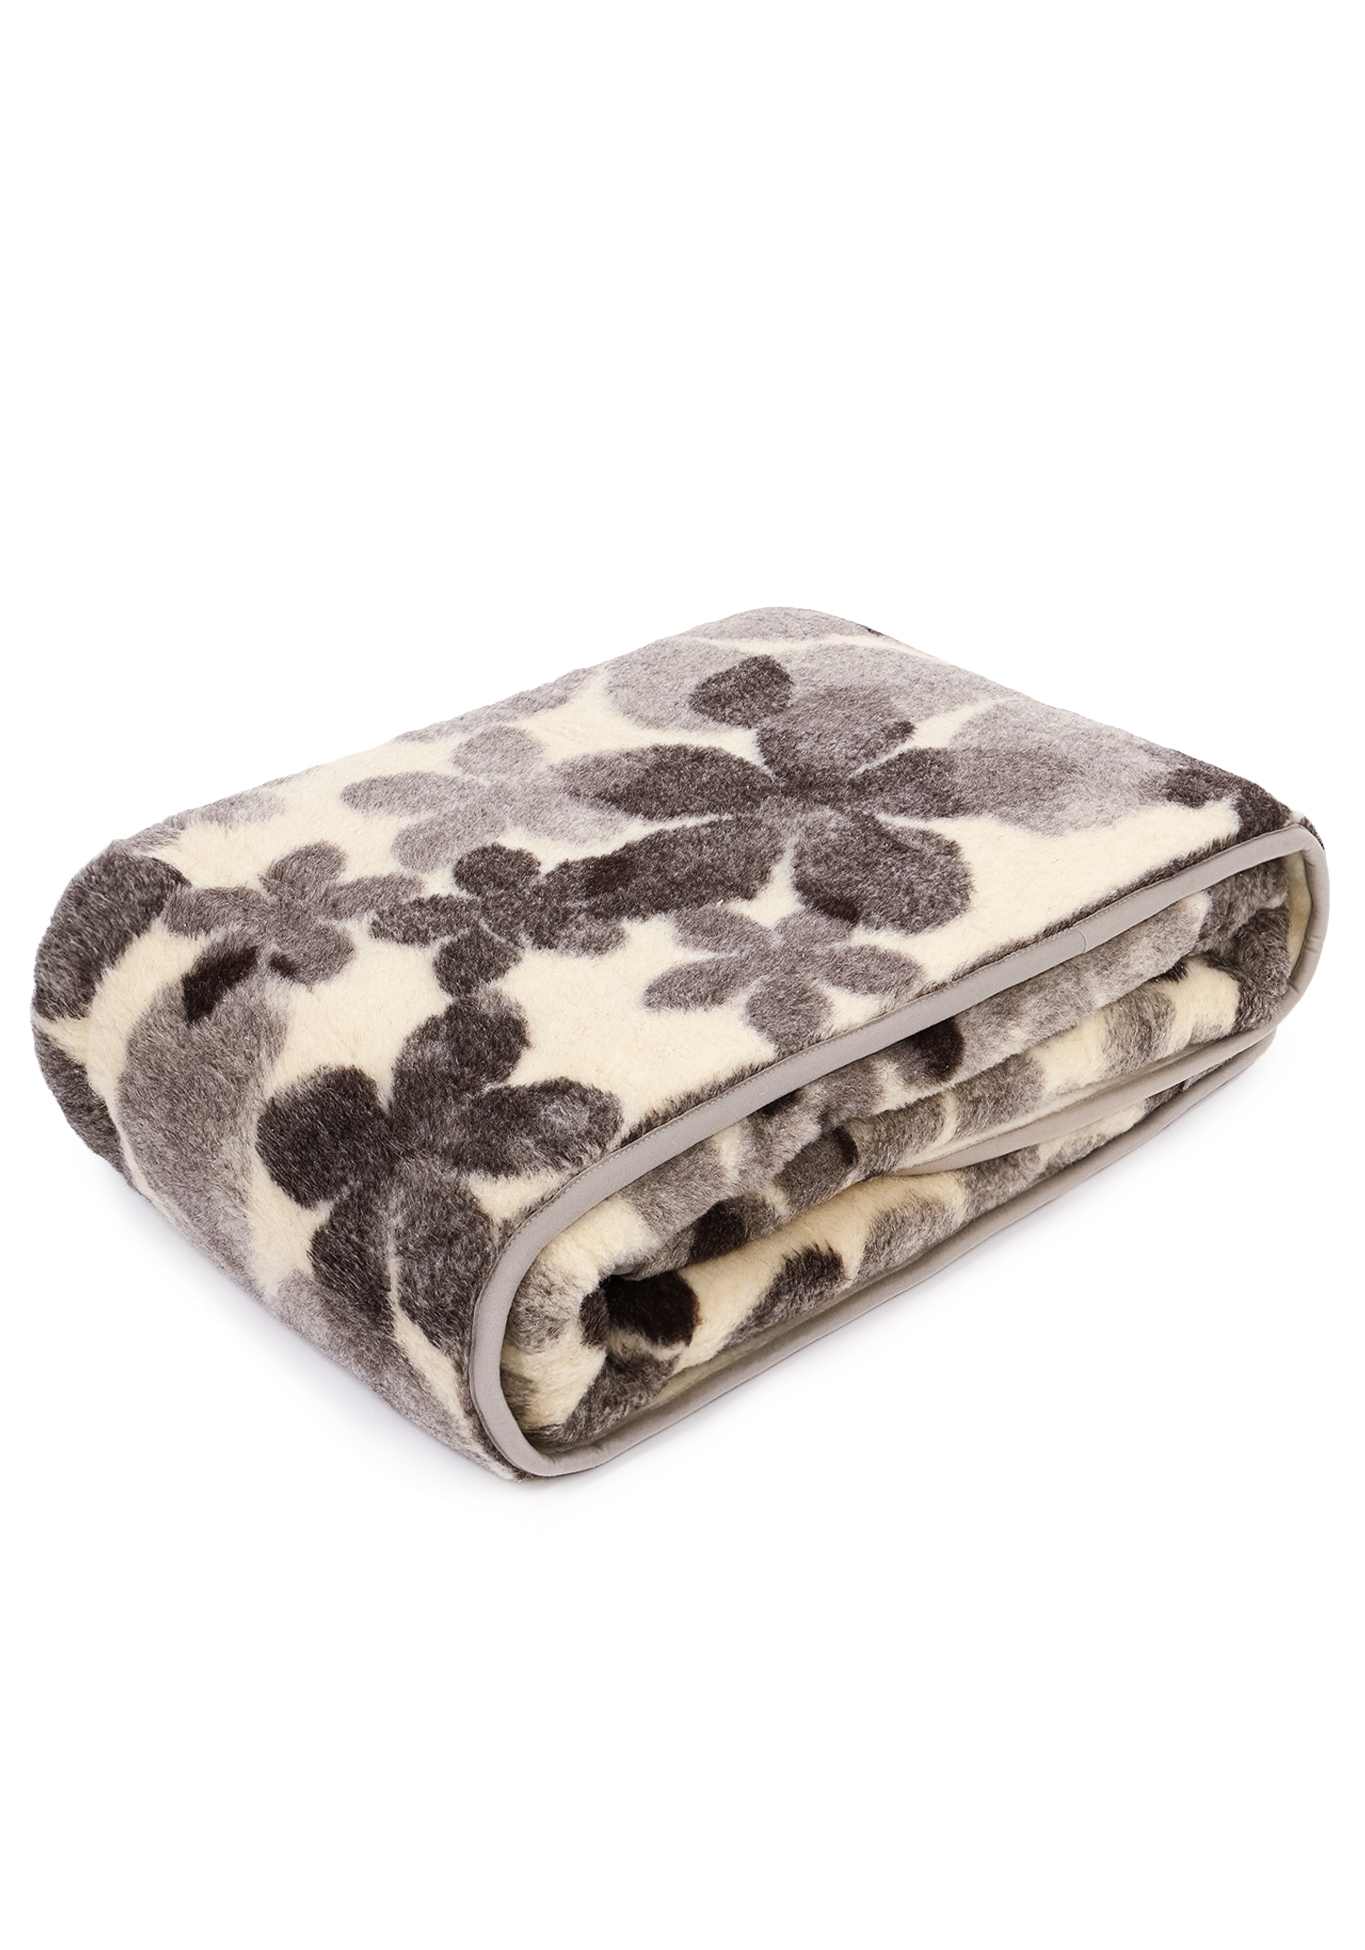 Одеяло из натуральной овечьей шерсти Alwero, цвет бело-серый, размер 100х140 - фото 8